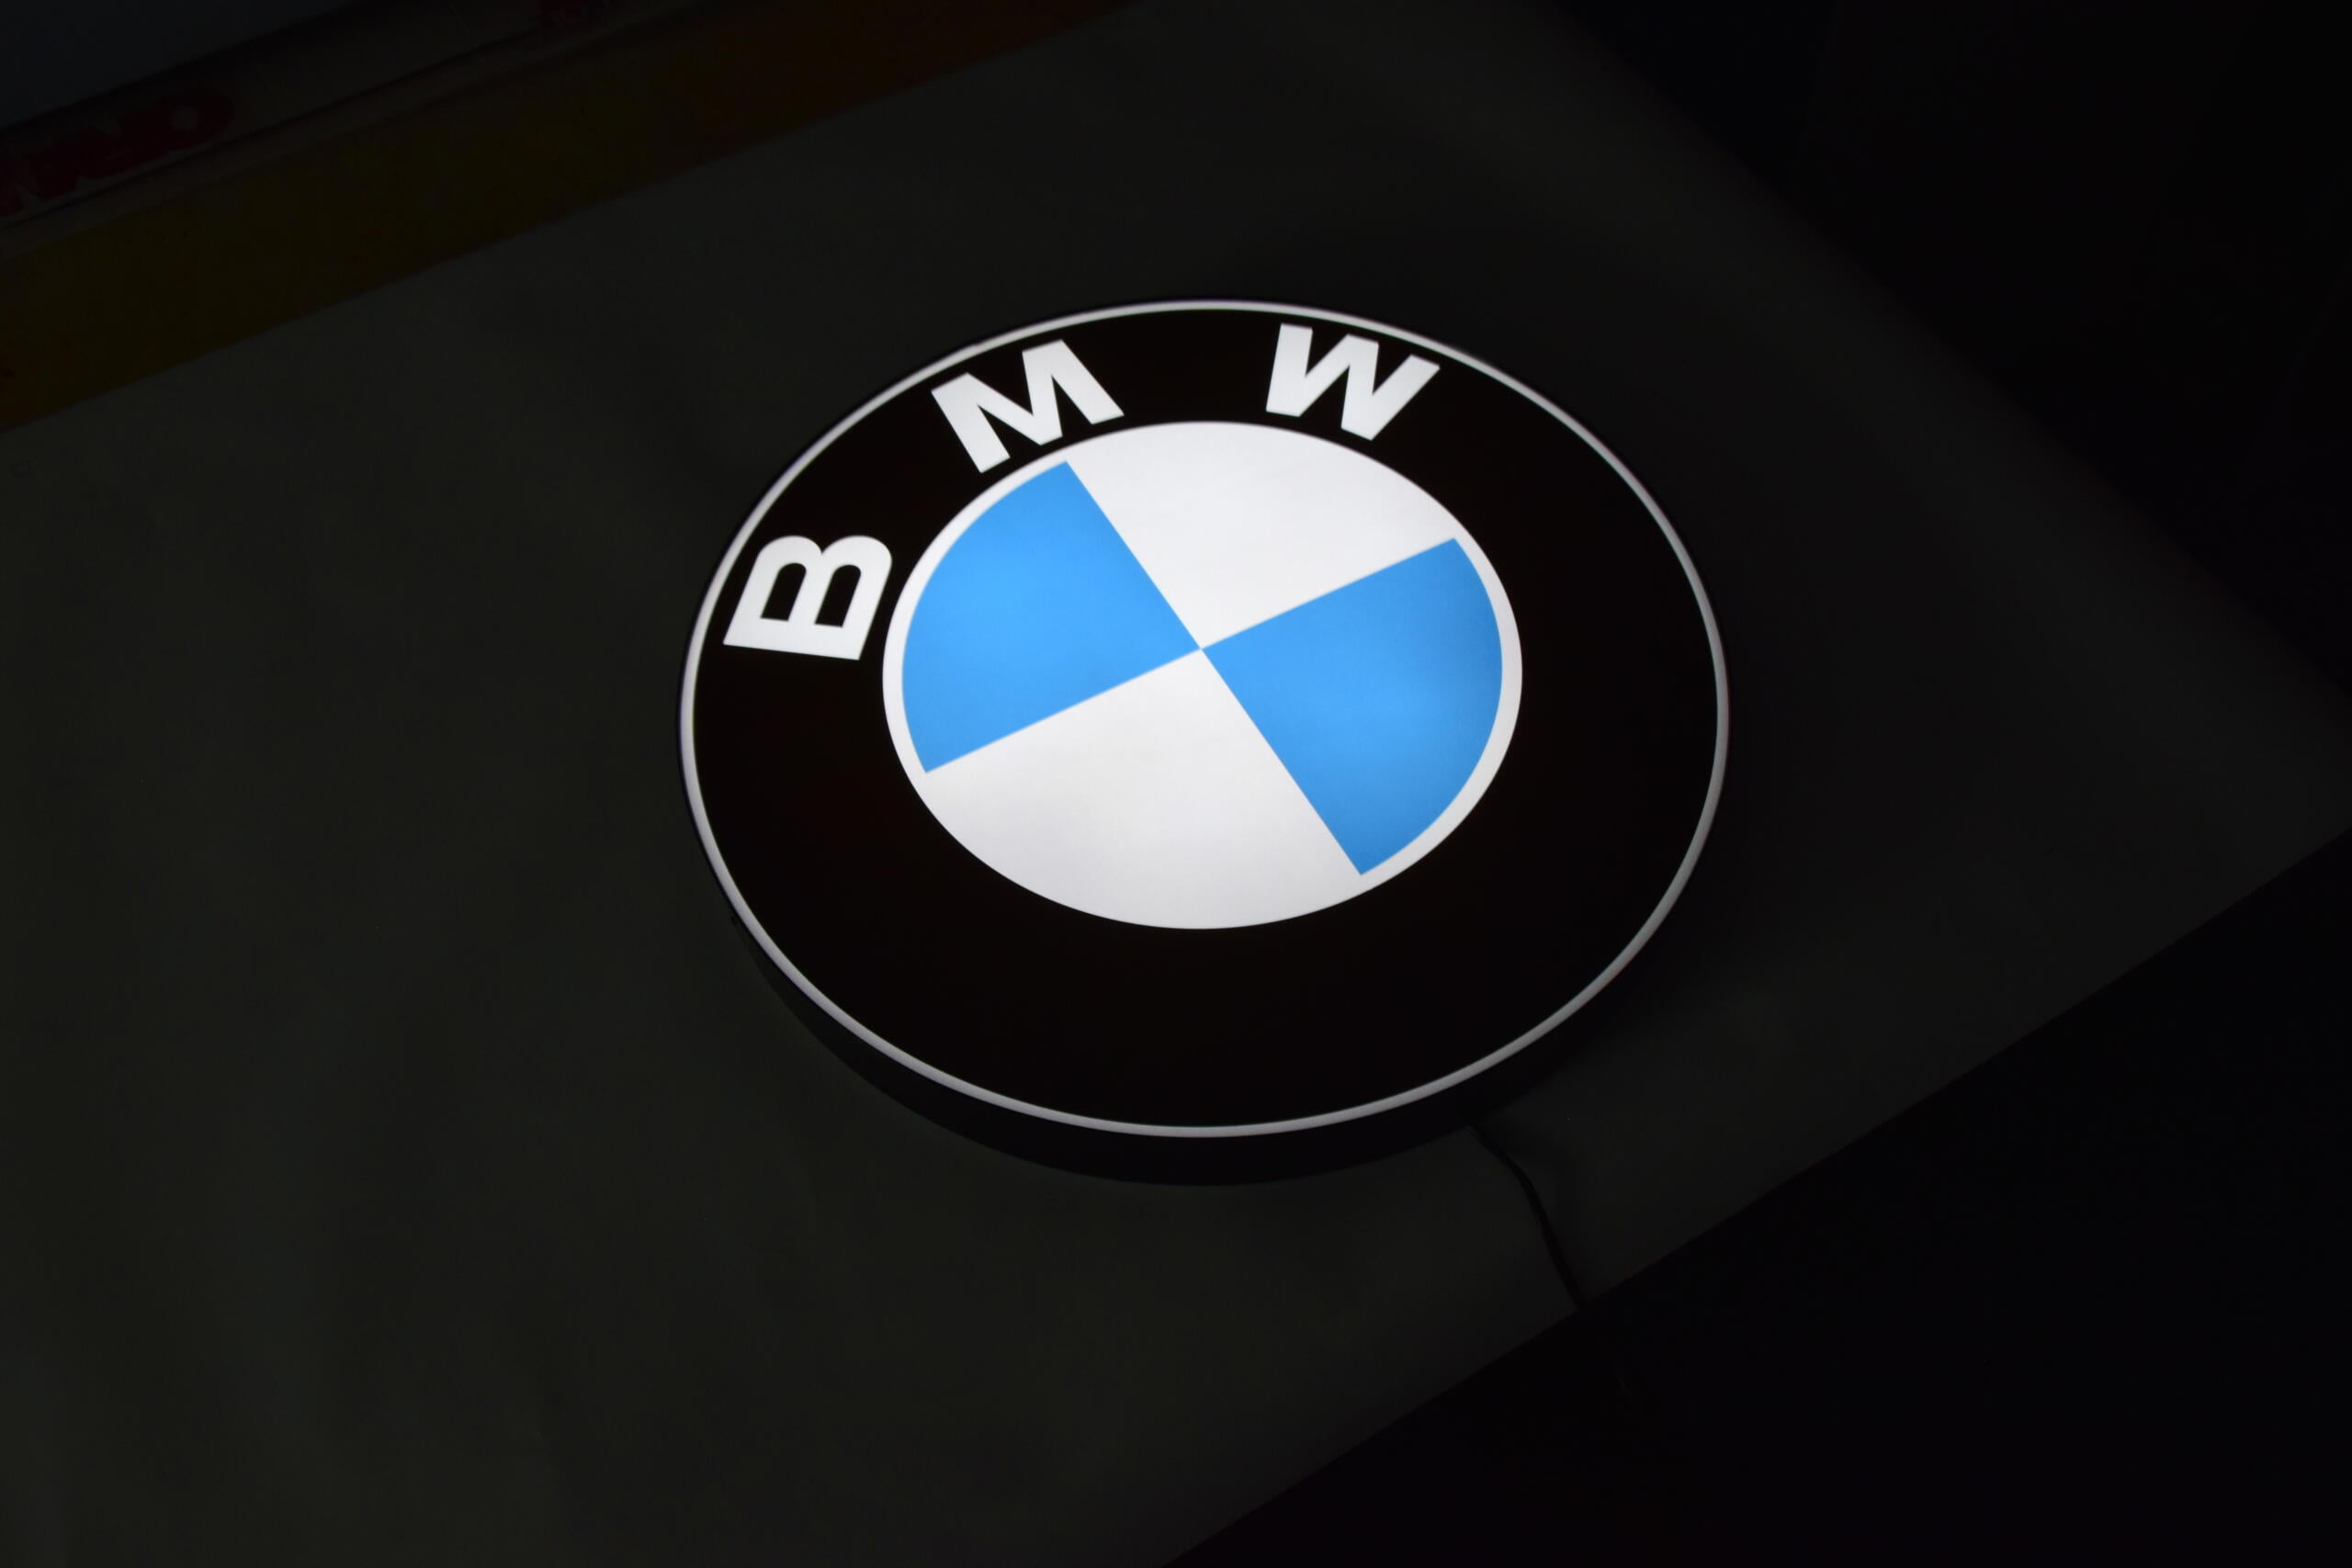 Logo BMW LED 3D éclairé 50-80 CM Publicité - LedWords Shop - Logo